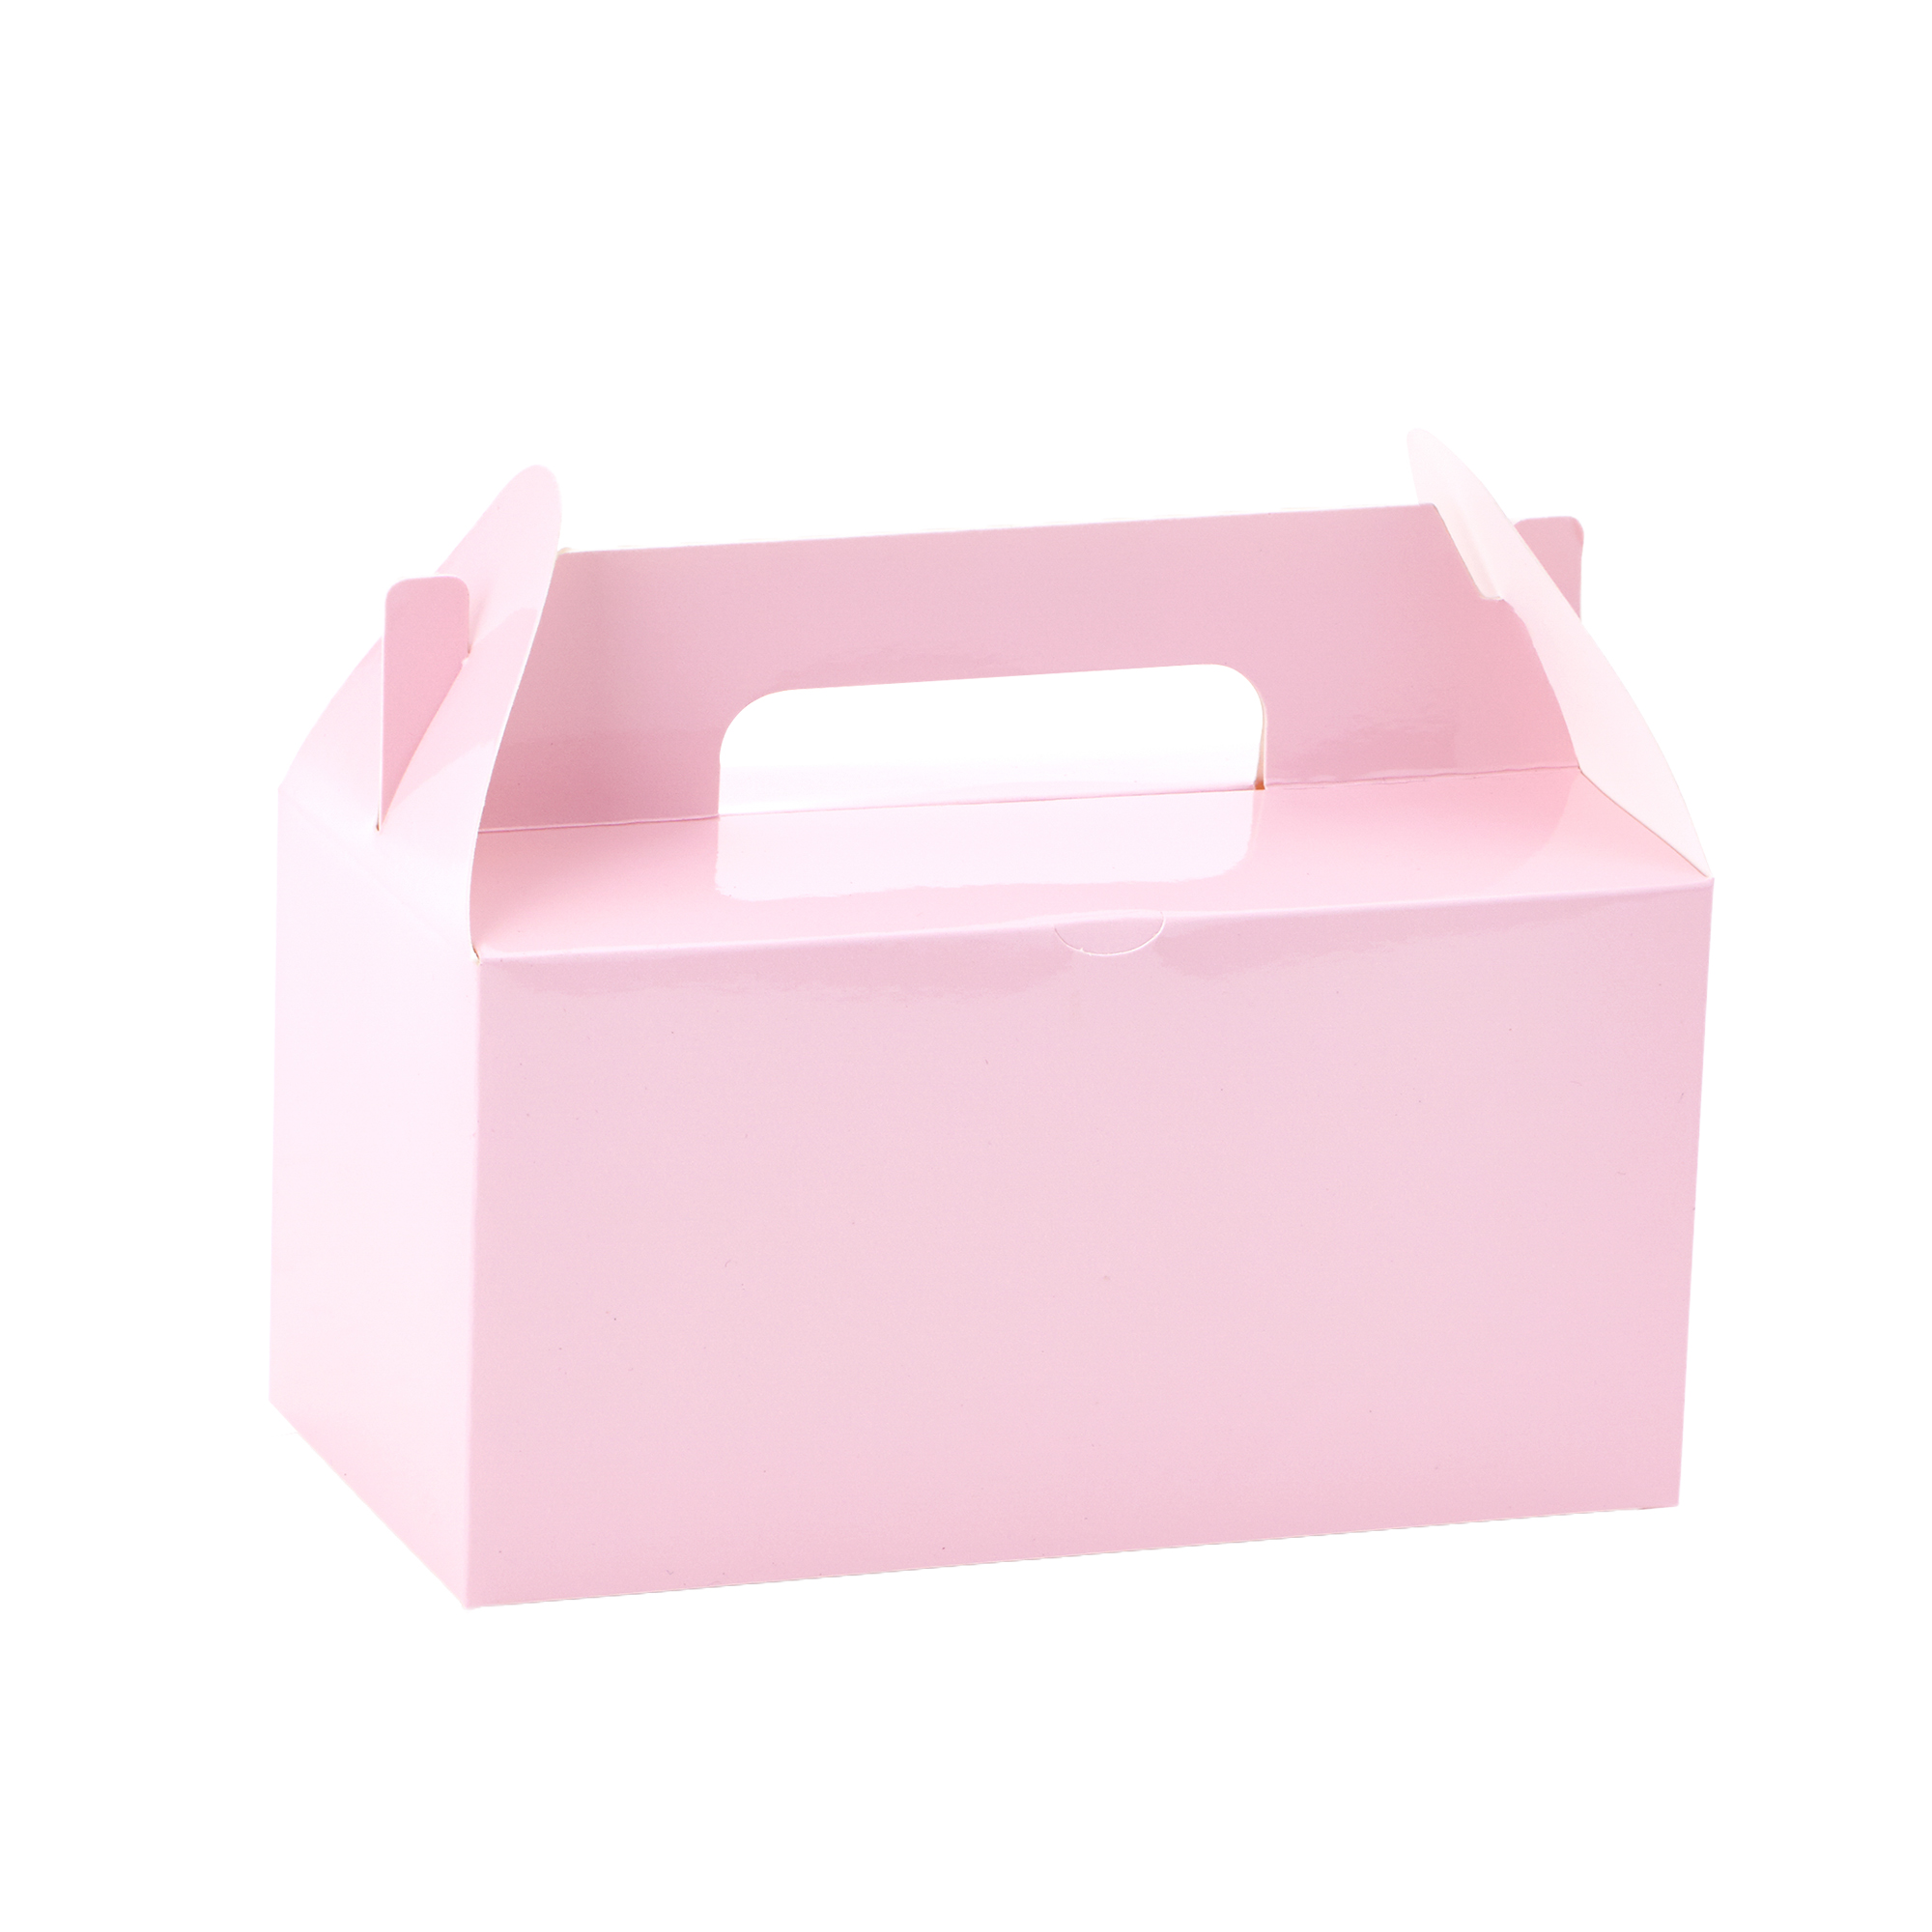 Takeout Box 12pcs/bag - Pink